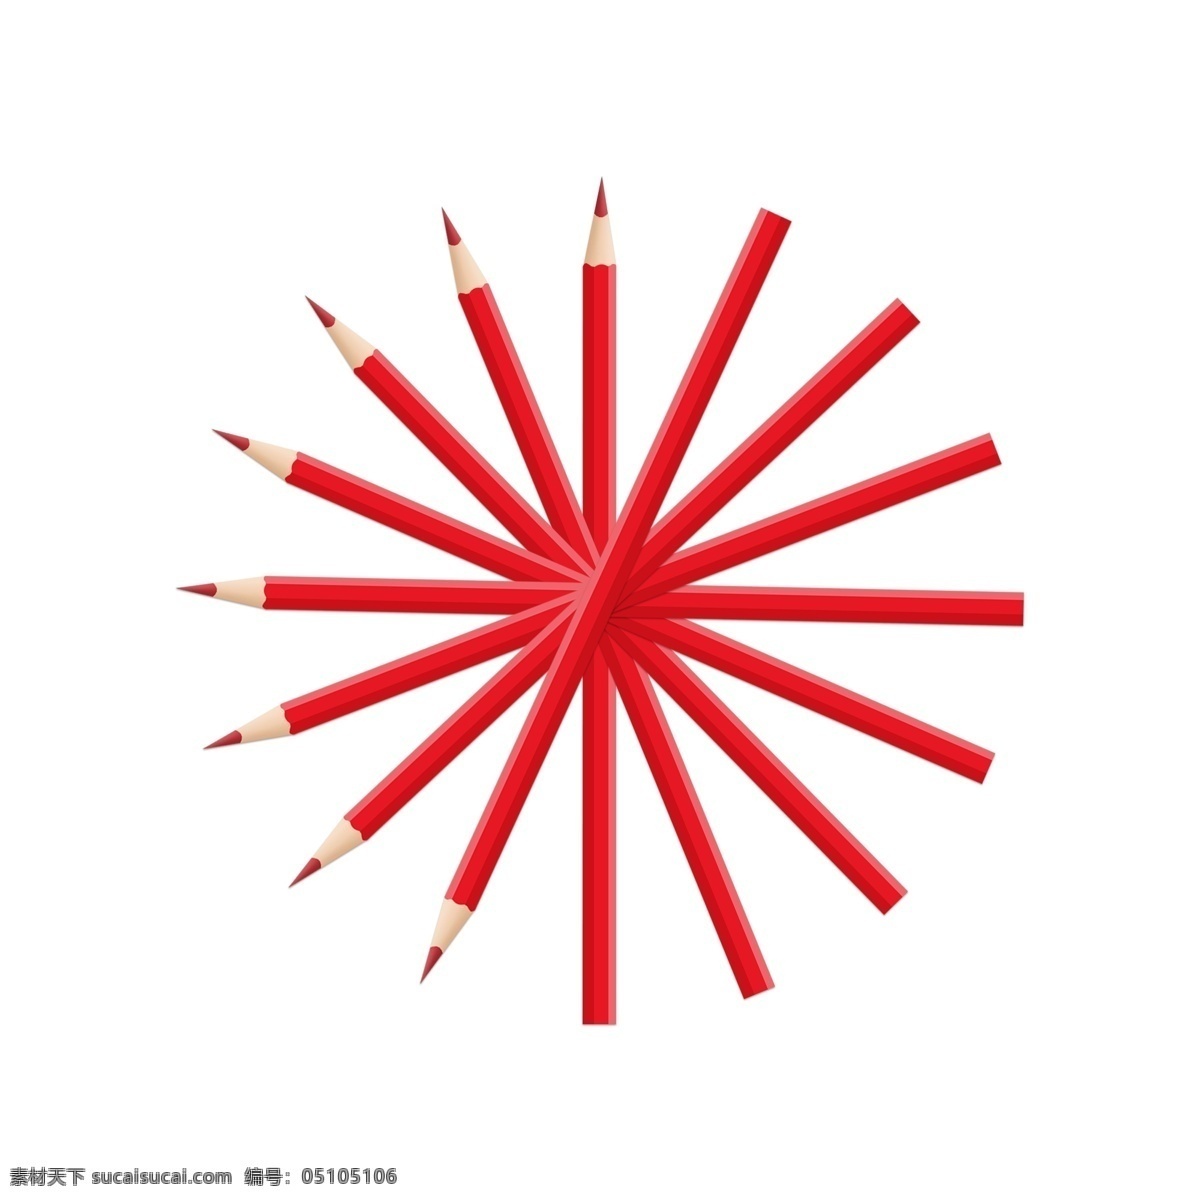 文具用品 红色 铅笔 儿童文具用品 不 带 橡皮 卡通手绘 学习用具 红色铅笔